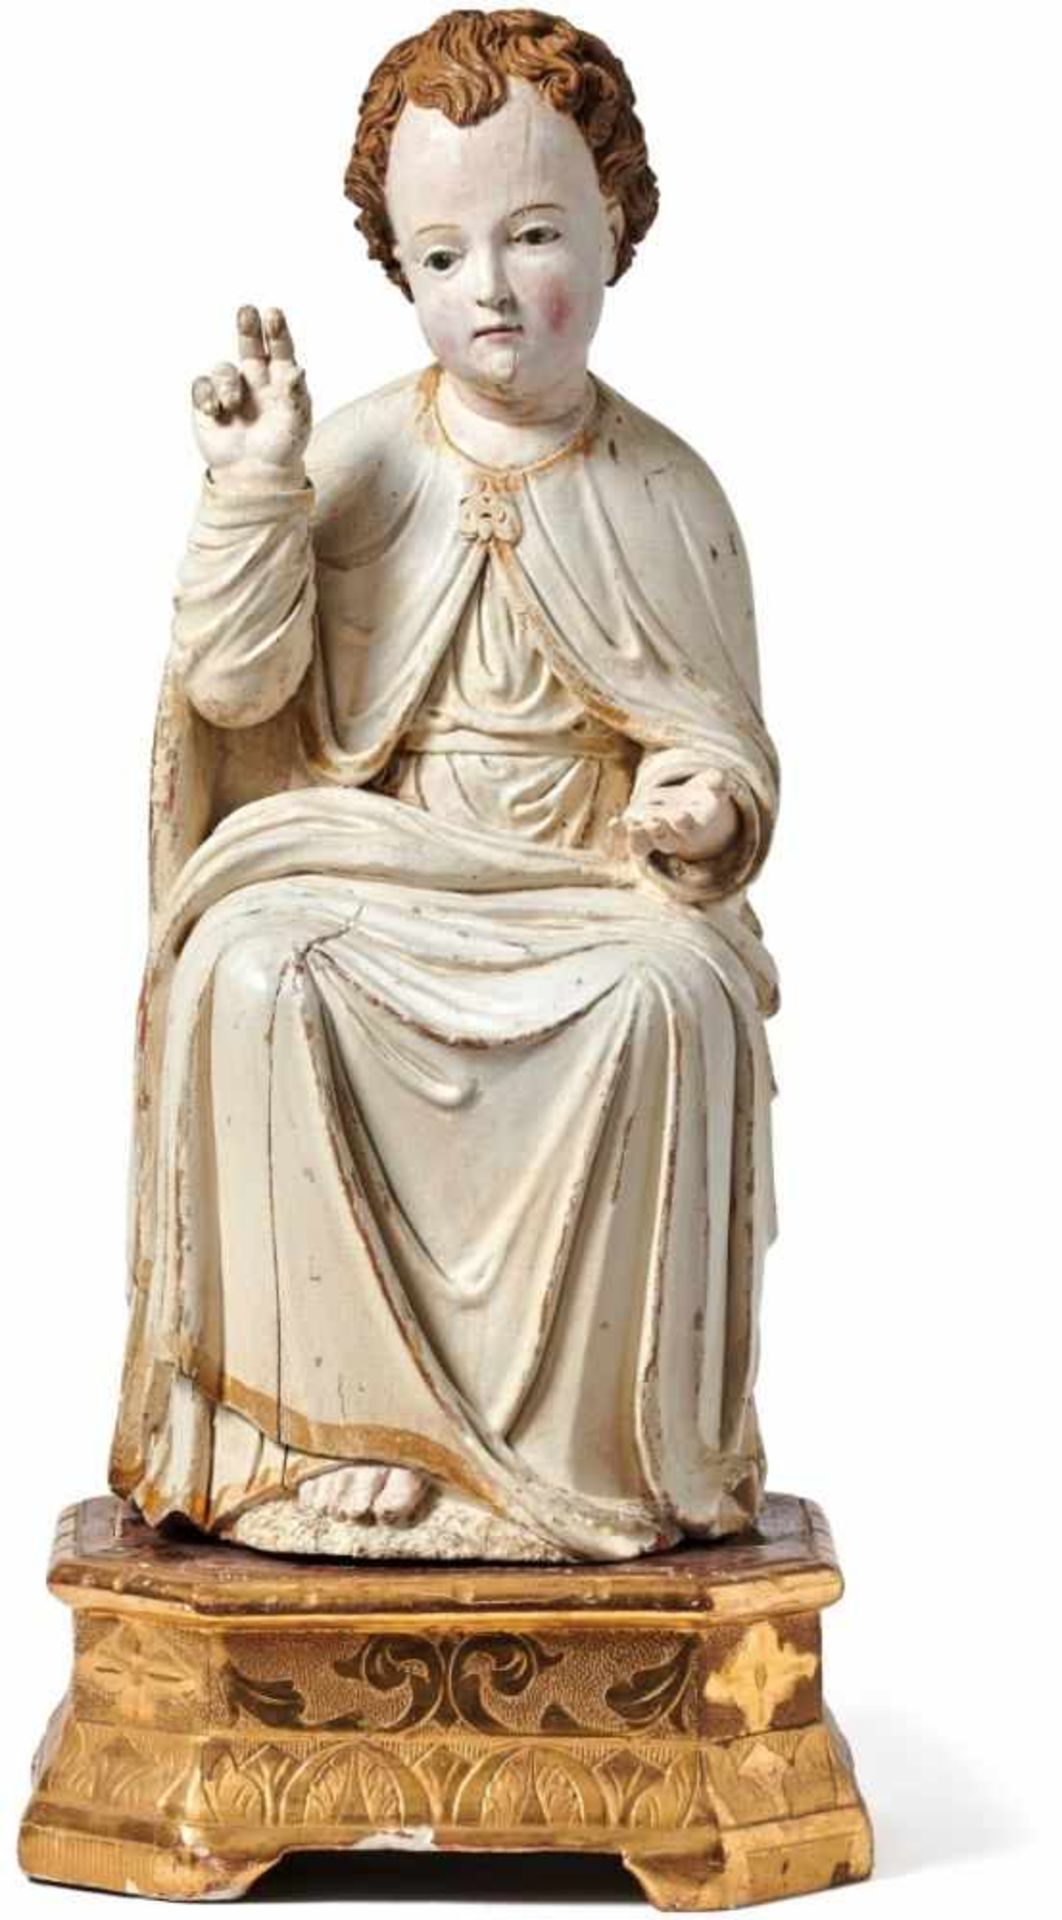 Segnender Jesusknabe17. Jh.Auf Sockel mit graviertem und gepunztem Floraldekor sitzender, vollrund